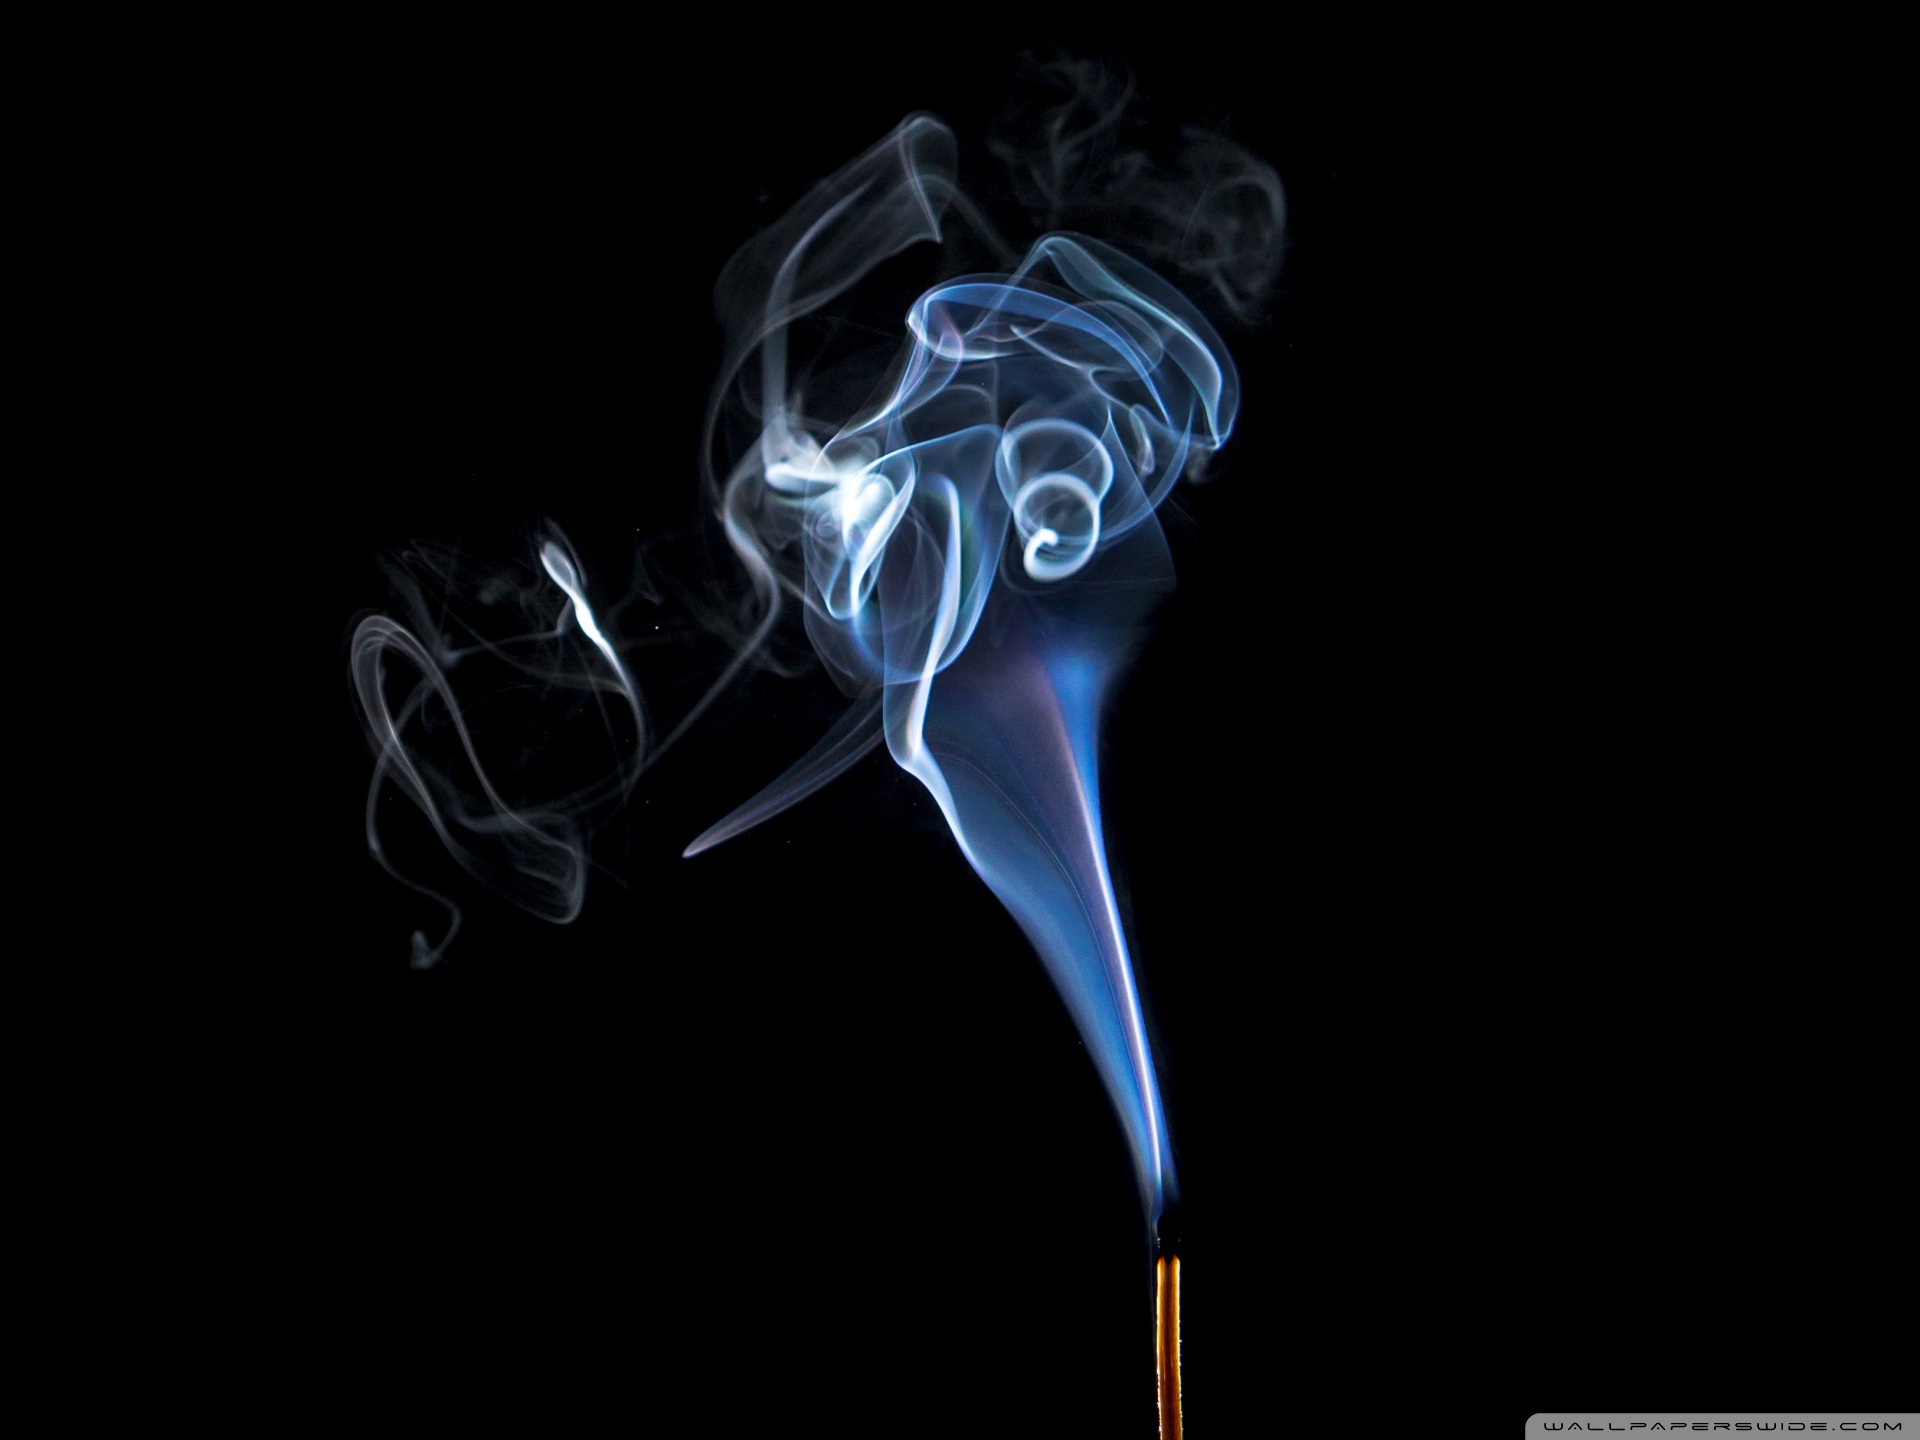 Matchstick Burnt, Smoke Ultra HD Desktop Background Wallpaper for ...